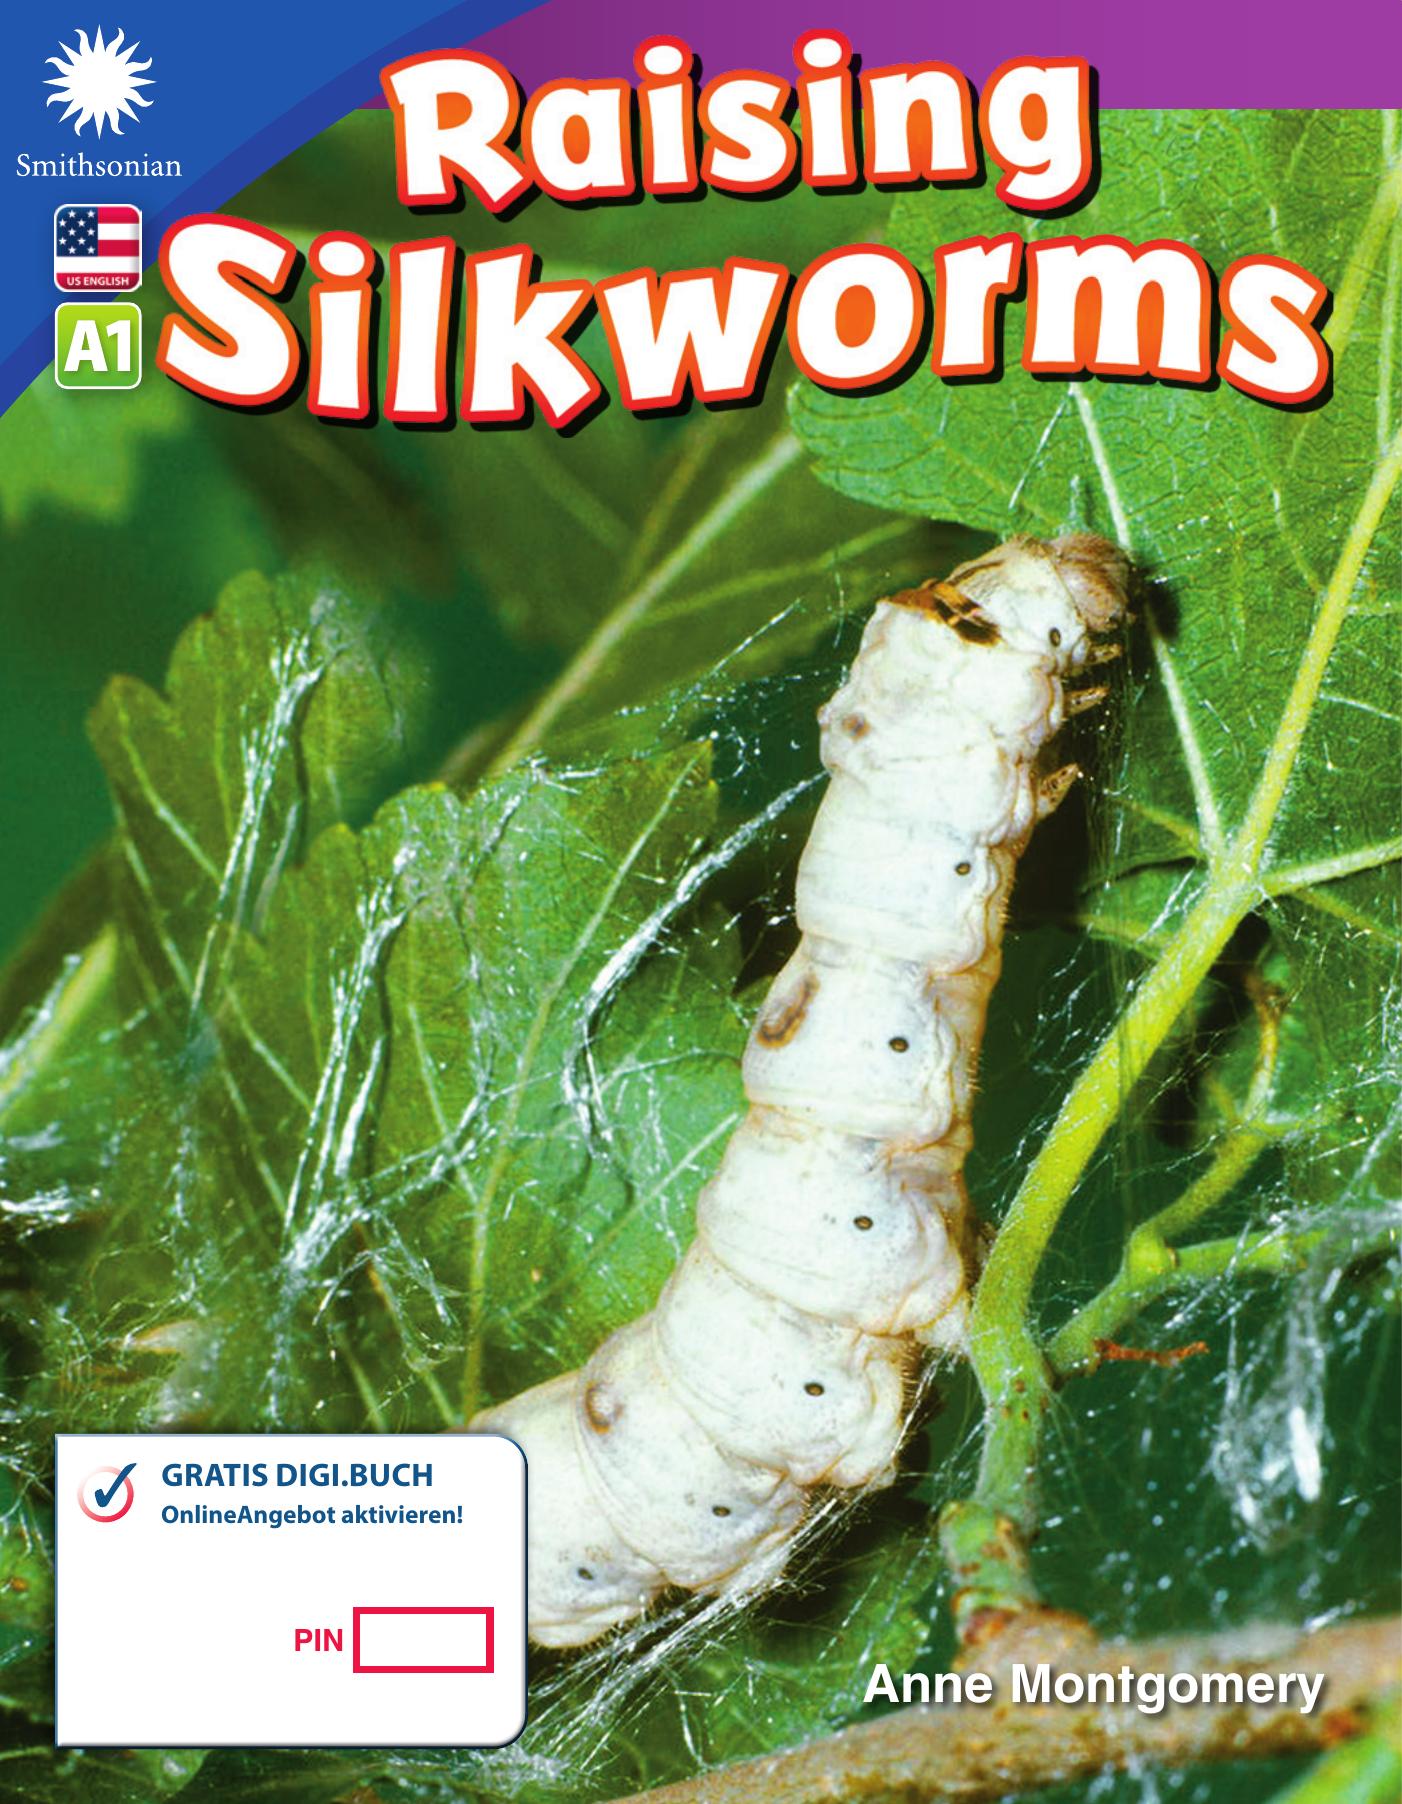 A1 – Raising Silkworms